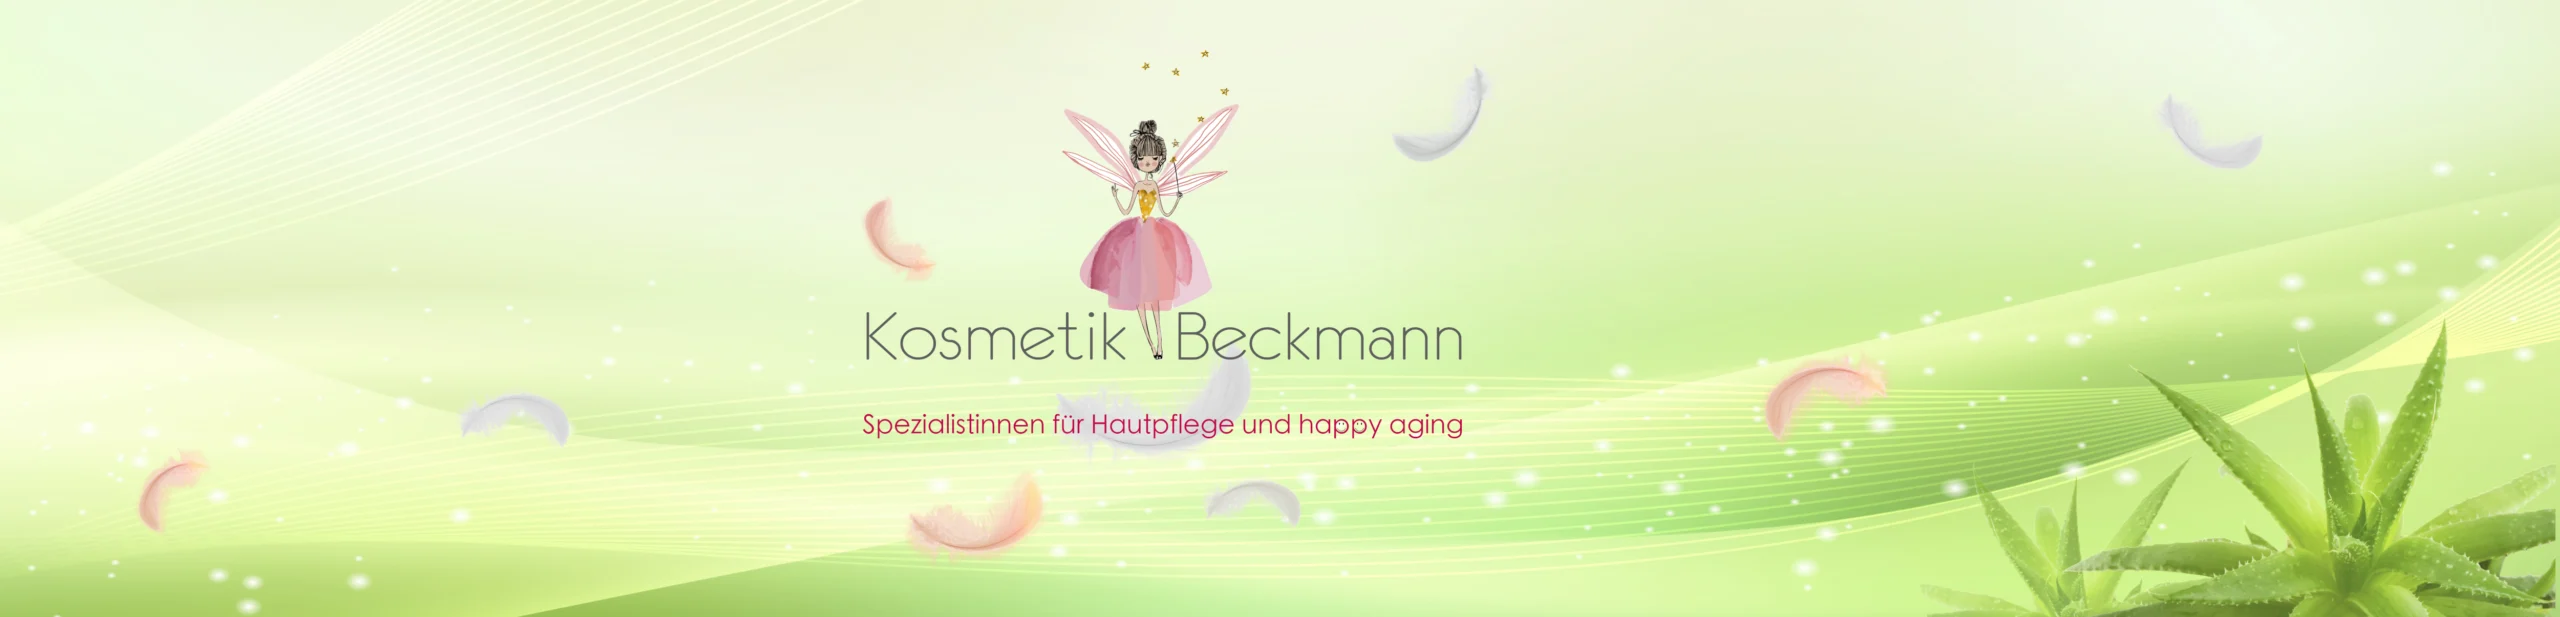 Cosmetics Beckmann